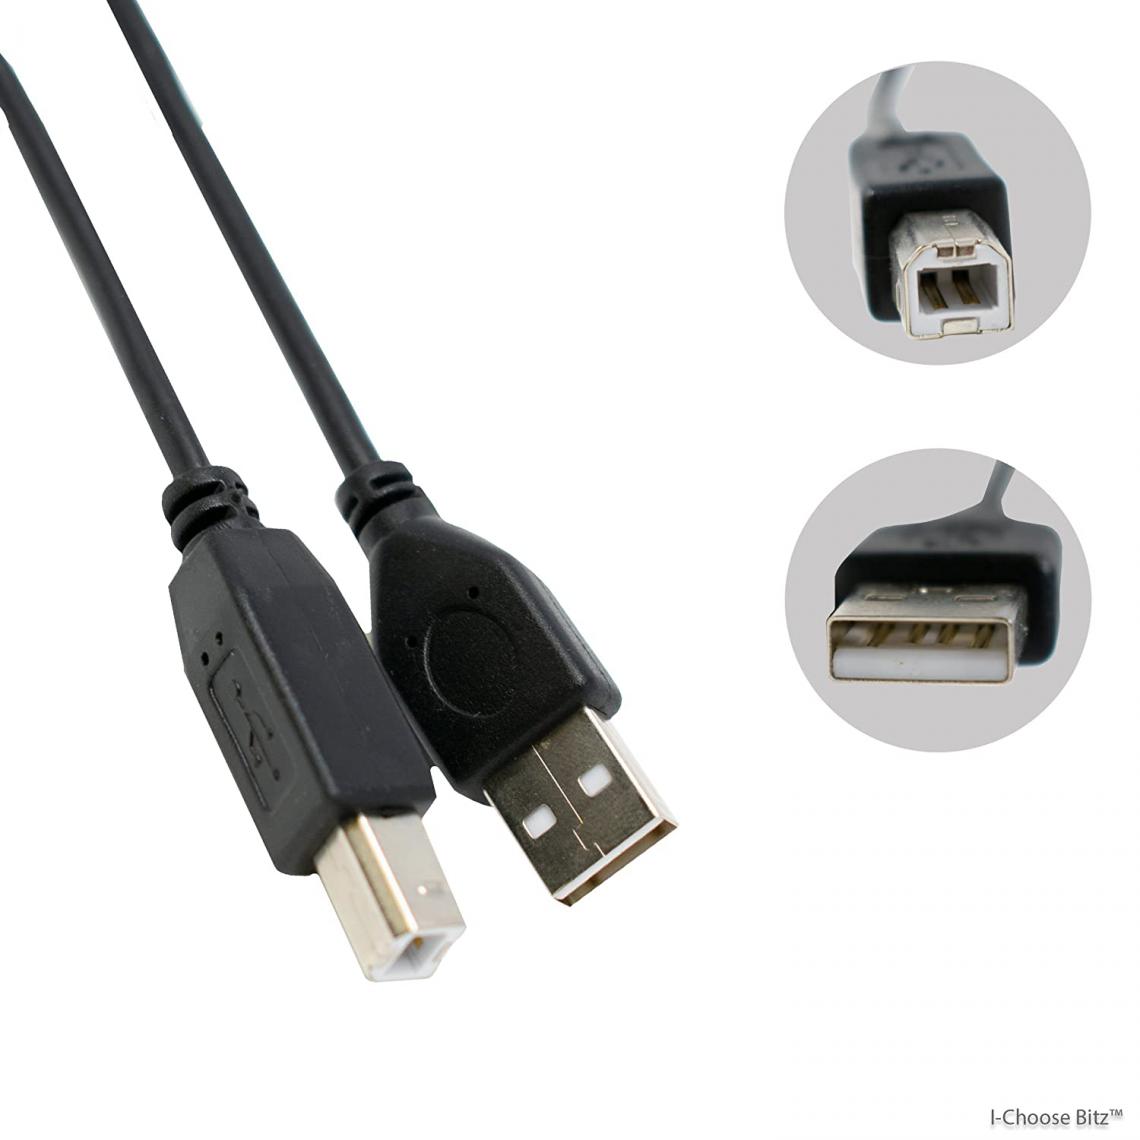 Ineck - INECK - Cable USB 2.0 Fiche A / Fiche B 5m Noir - Câble antenne